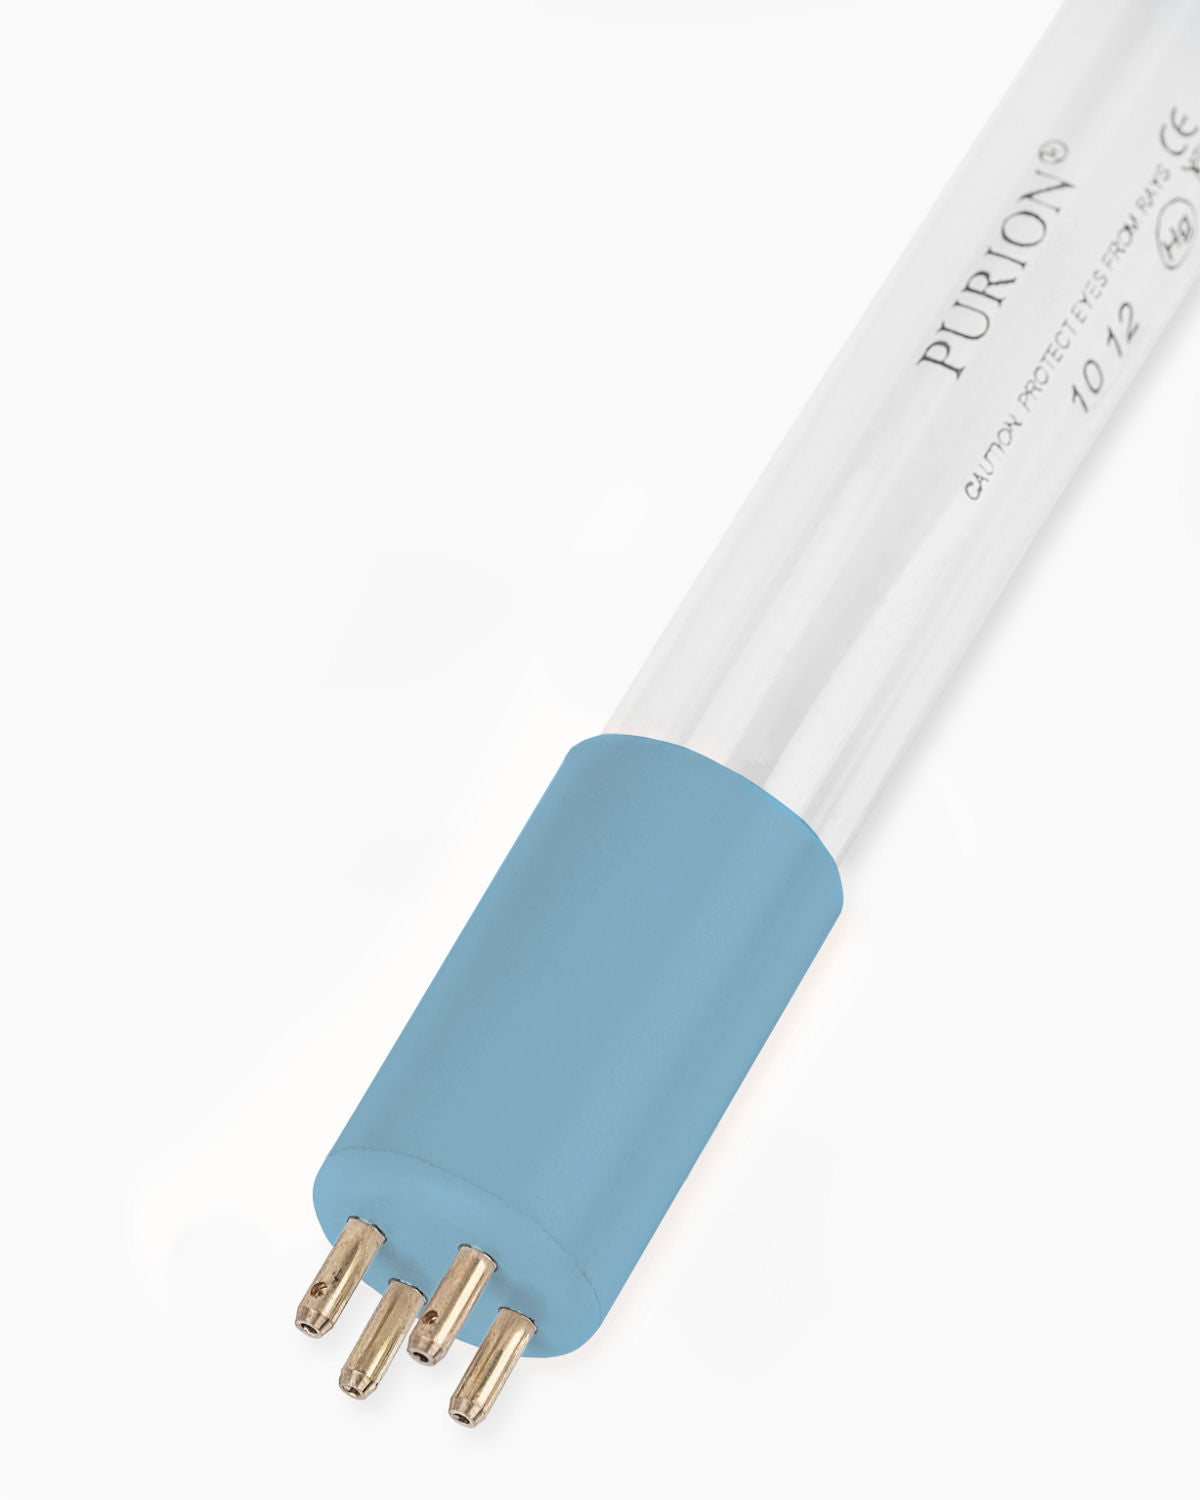 Ein PURION 2501 PVC-U OTC-Bundle auf weißem Hintergrund unter Verwendung des UV-C-Desinfektionsverfahrens.